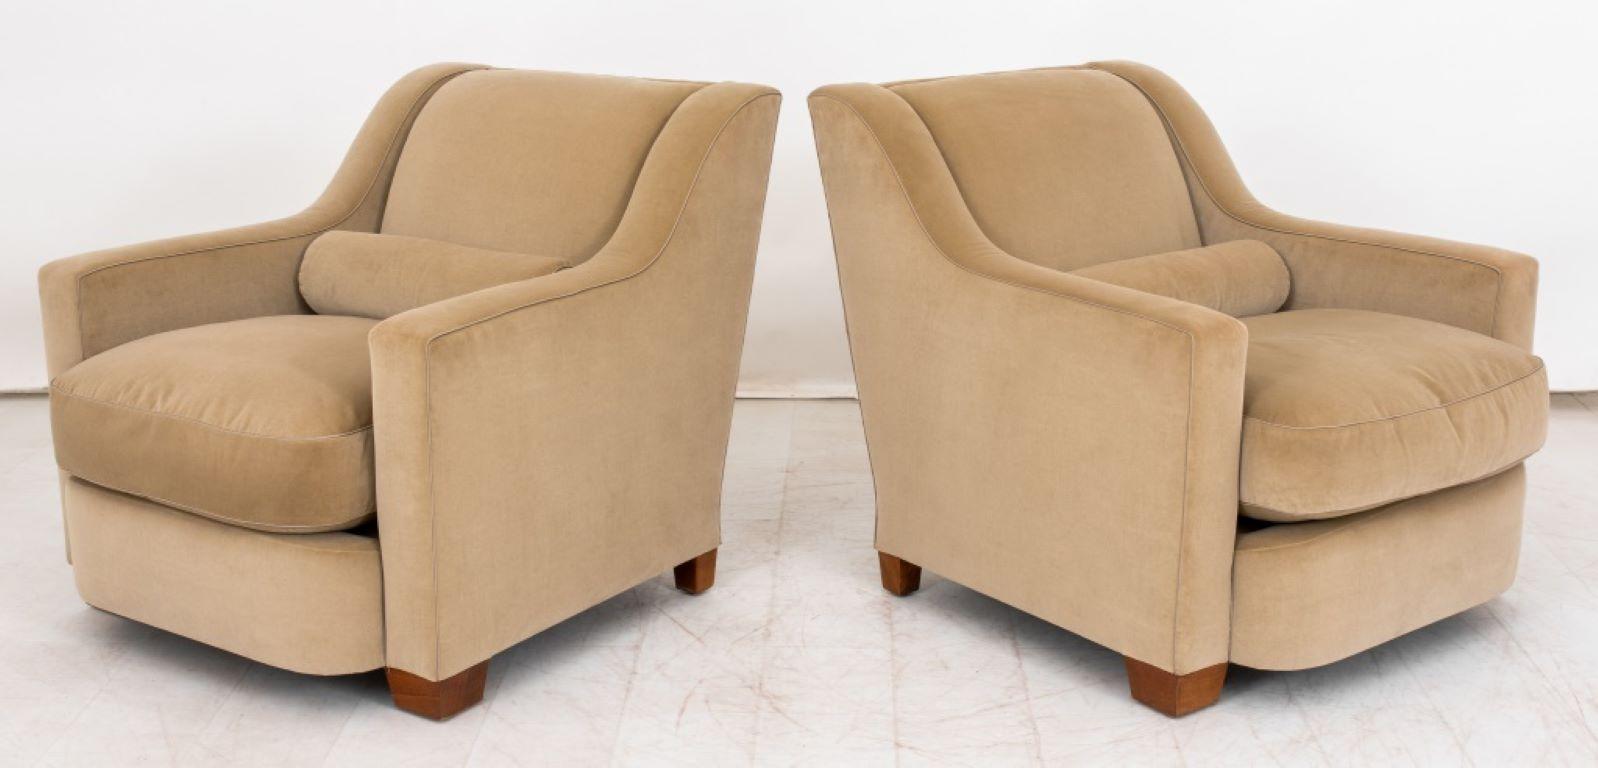 Paire de fauteuils en velours beige Thad Hayes, de style Art Déco, avec passepoil en soie.

Concessionnaire : S138XX